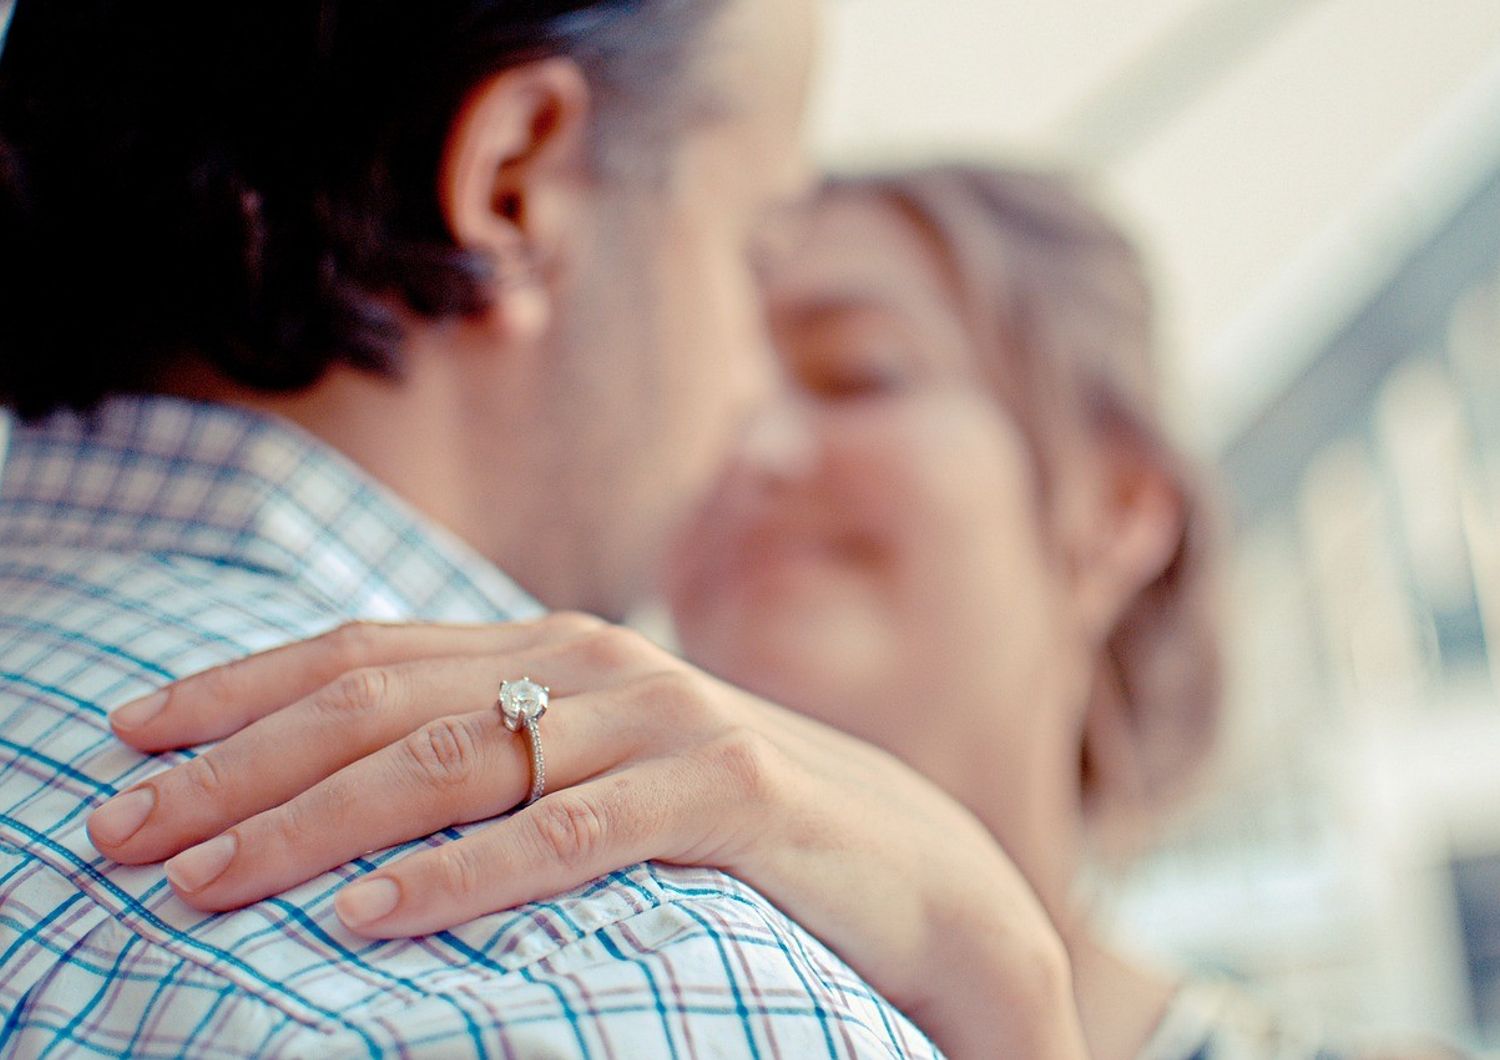 coppia abbraccio felice felicita' anello diamante (Pixabay)&nbsp;